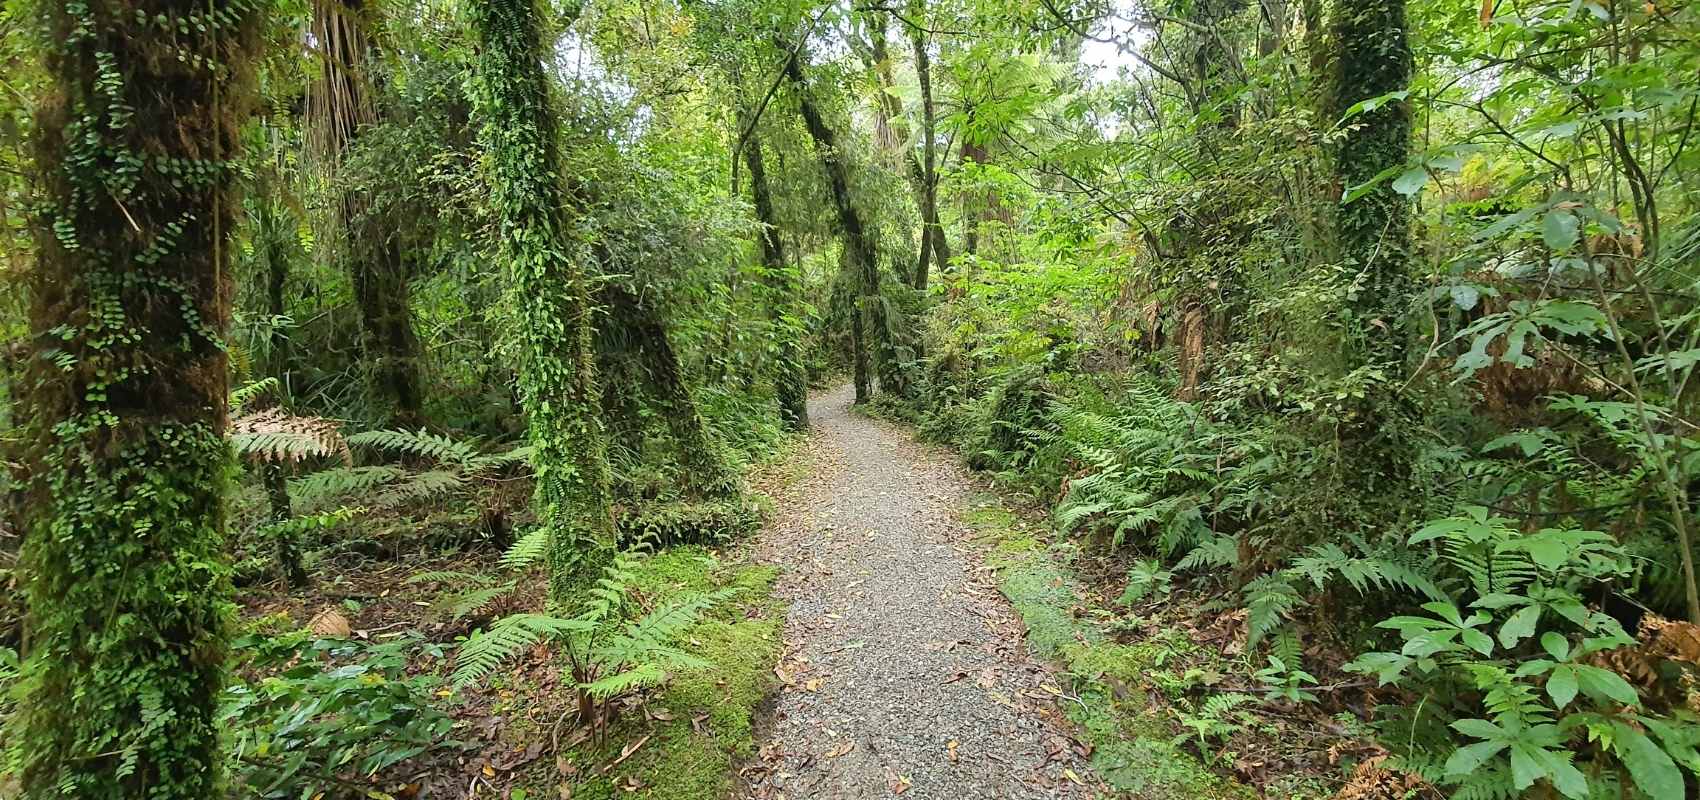 Excellent track the Mananui Bush Walk - Hokitika Walks - West Coast - Freewalks.nz